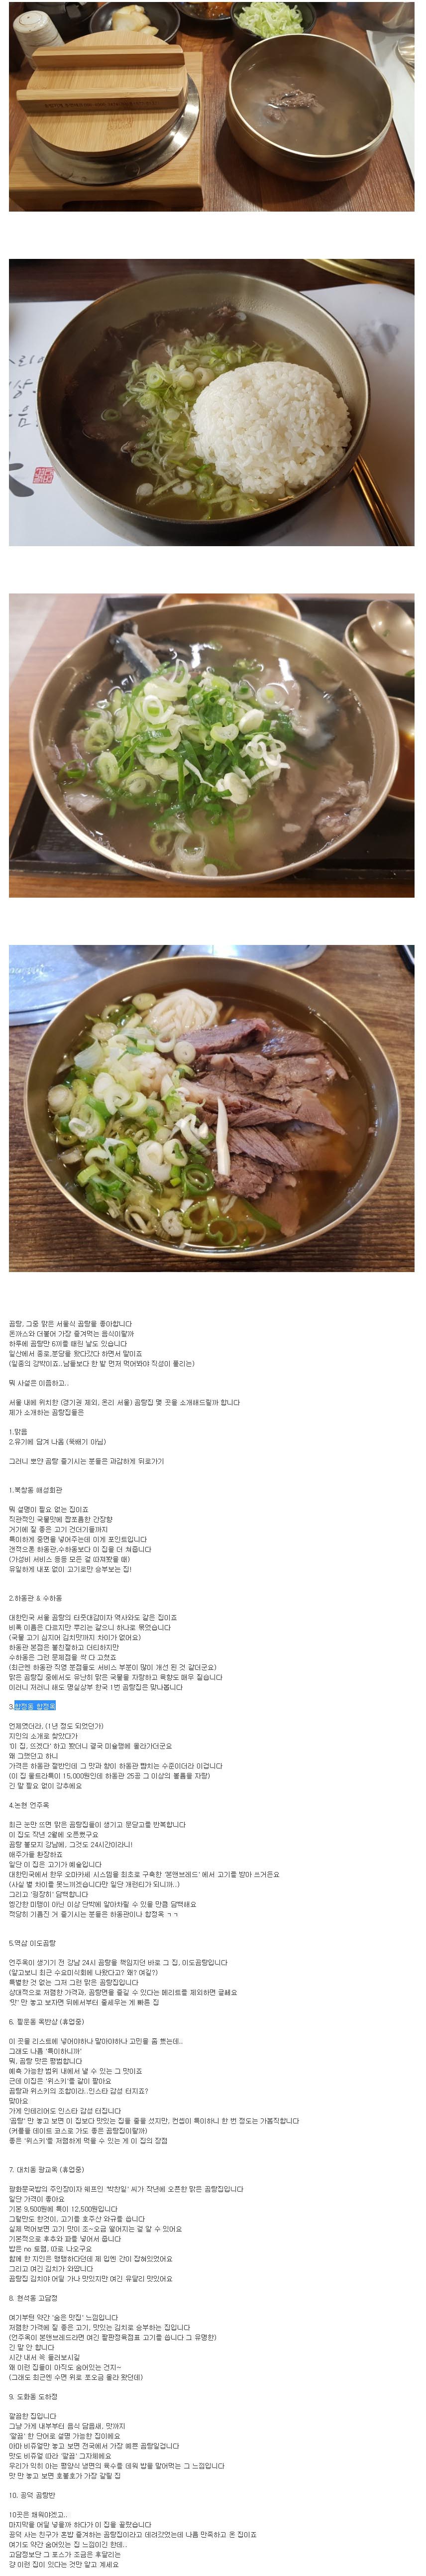 서울 곰탕 맛집 모음